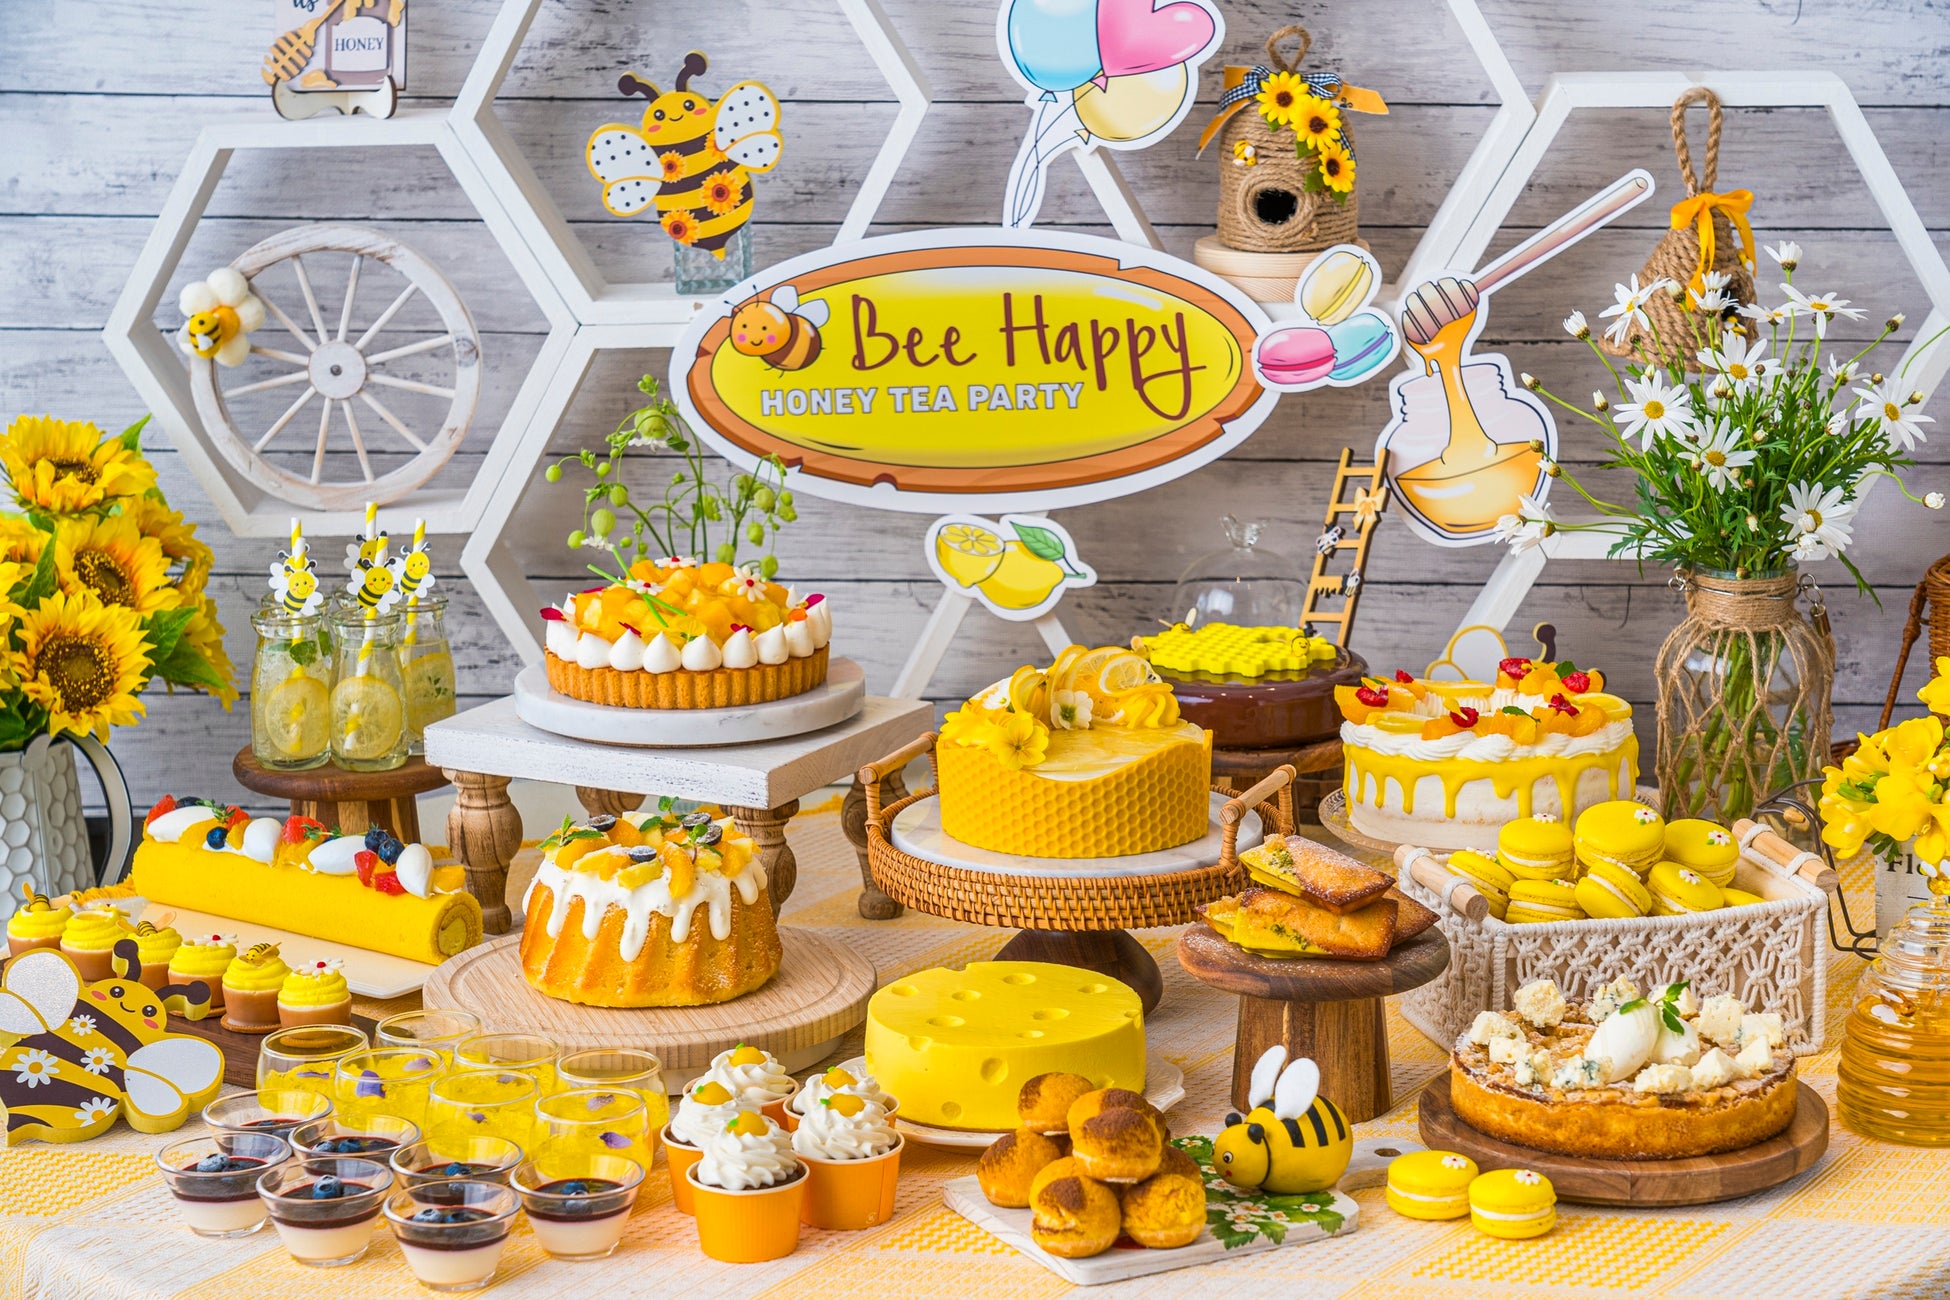 【ヒルトン広島】『Bee Happy ハニーティーパーティー』